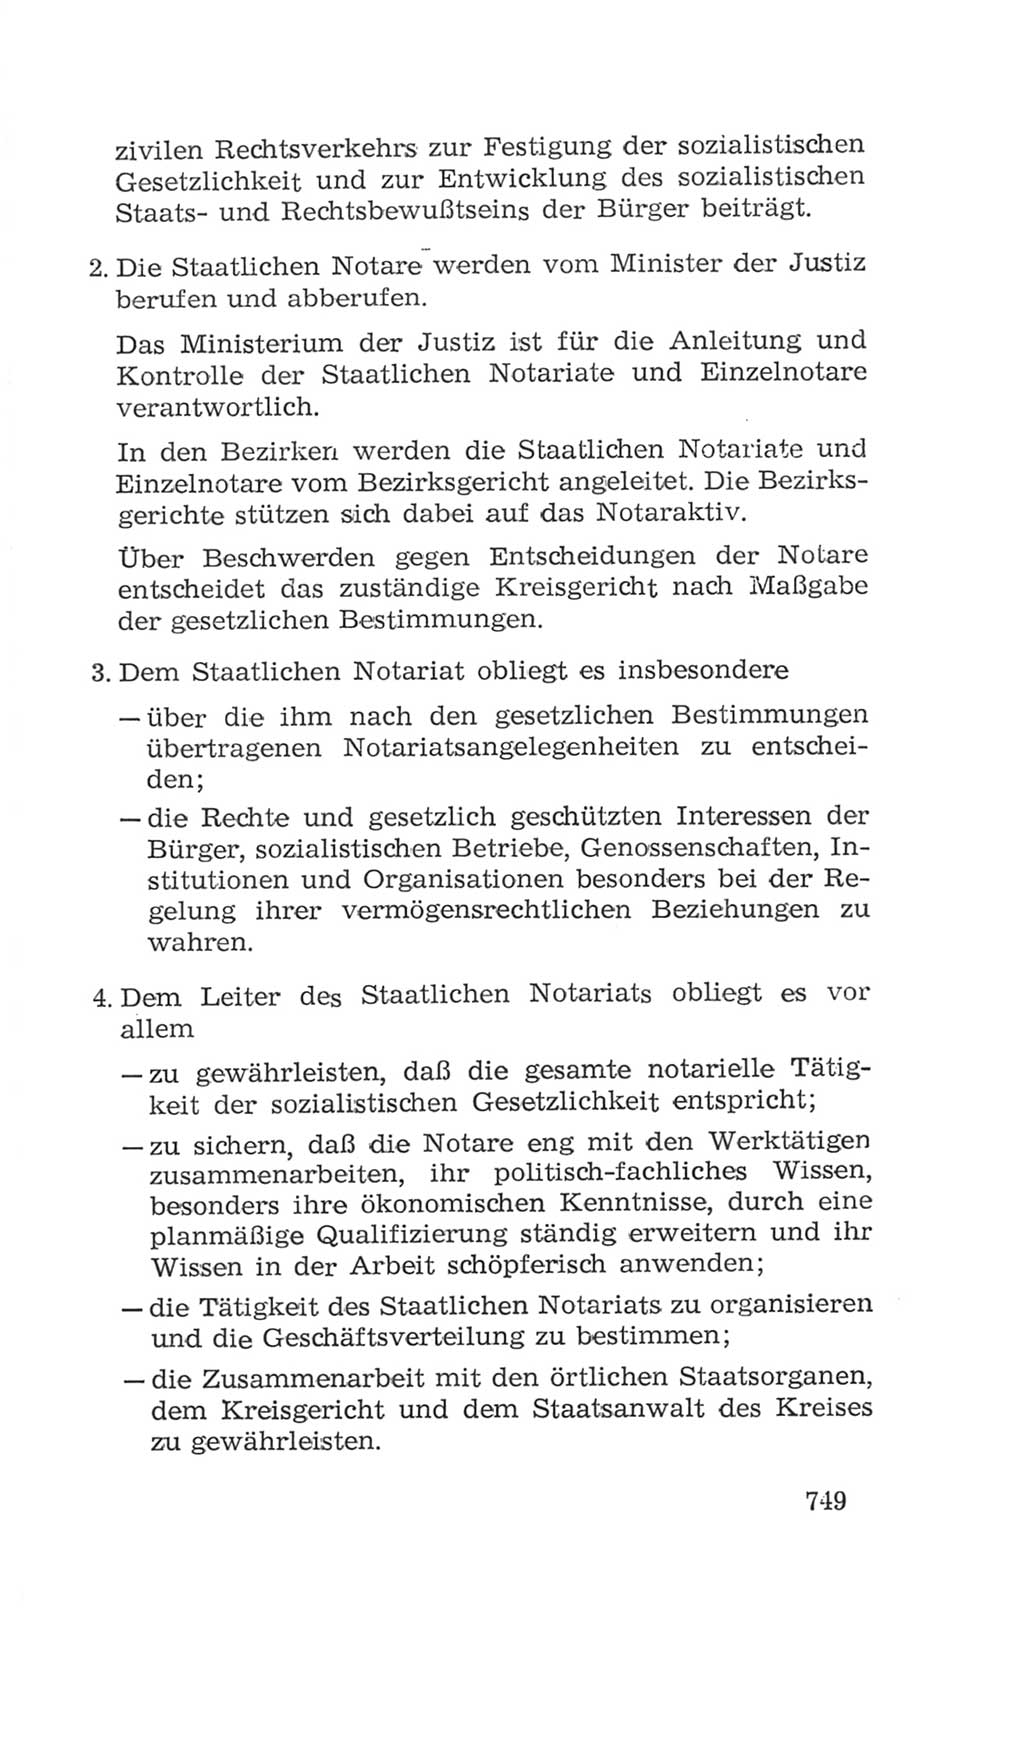 Volkskammer (VK) der Deutschen Demokratischen Republik (DDR), 4. Wahlperiode 1963-1967, Seite 749 (VK. DDR 4. WP. 1963-1967, S. 749)